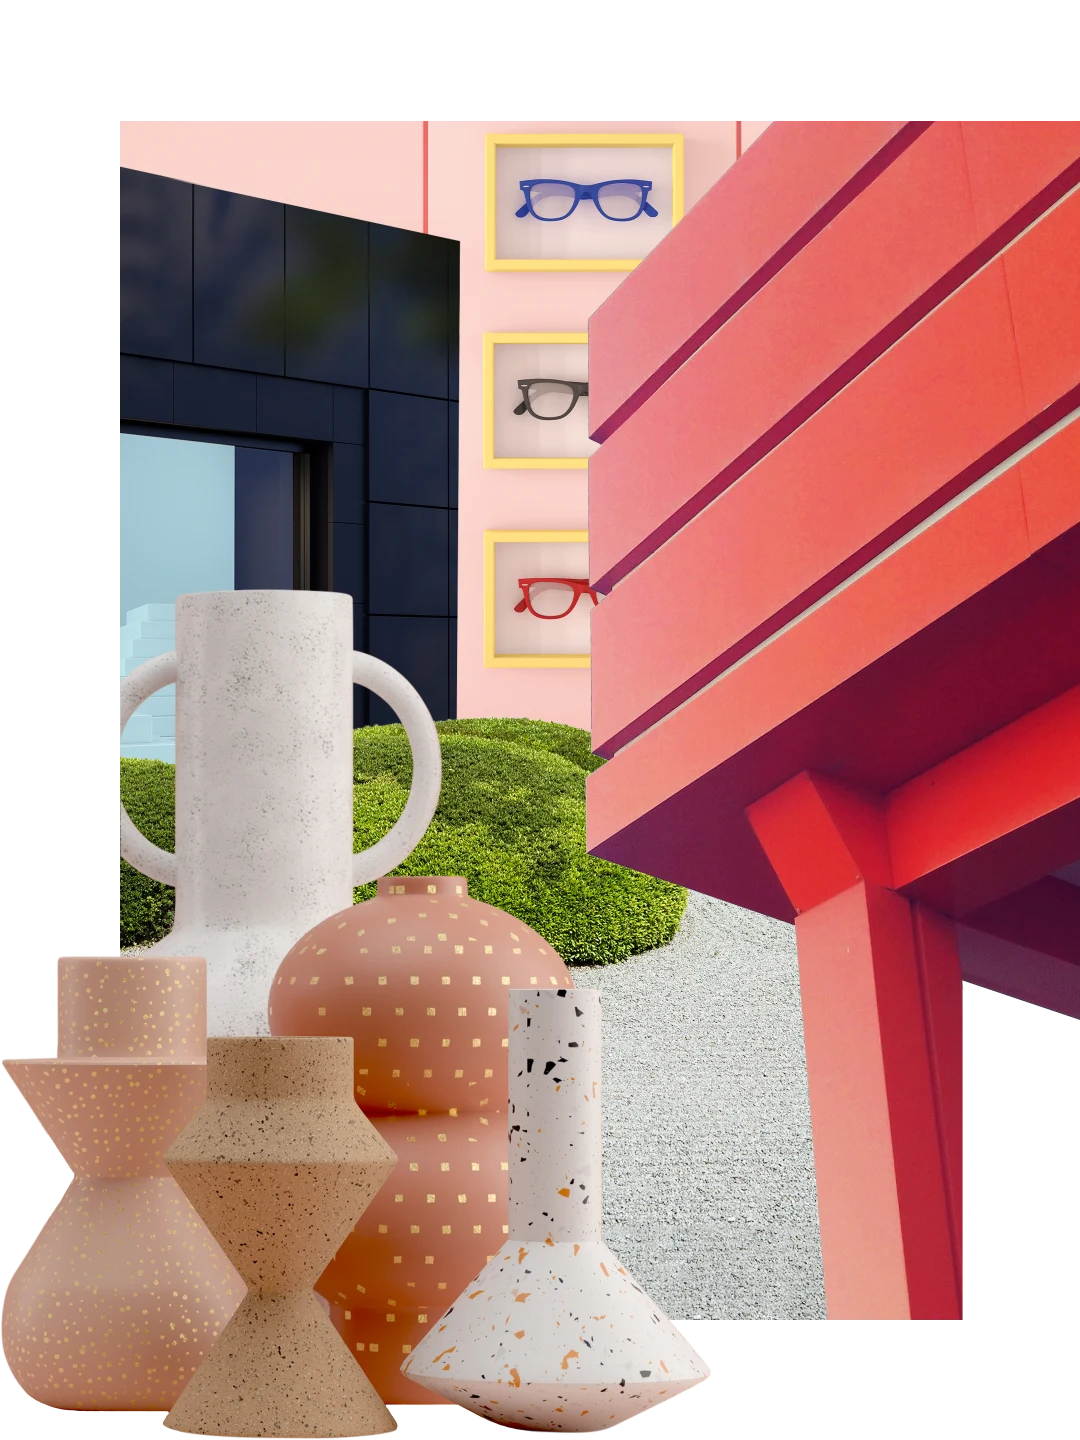 Collage sur le thème de la boutique. En arrière-plan à gauche, devanture de magasin aux formes anguleuses. À droite, coin d’un balcon rouge. En arrière-plan, mur avec des lunettes dans des cadres jaunes. À gauche, vases ronds et anguleux devant des buissons verts ronds.
